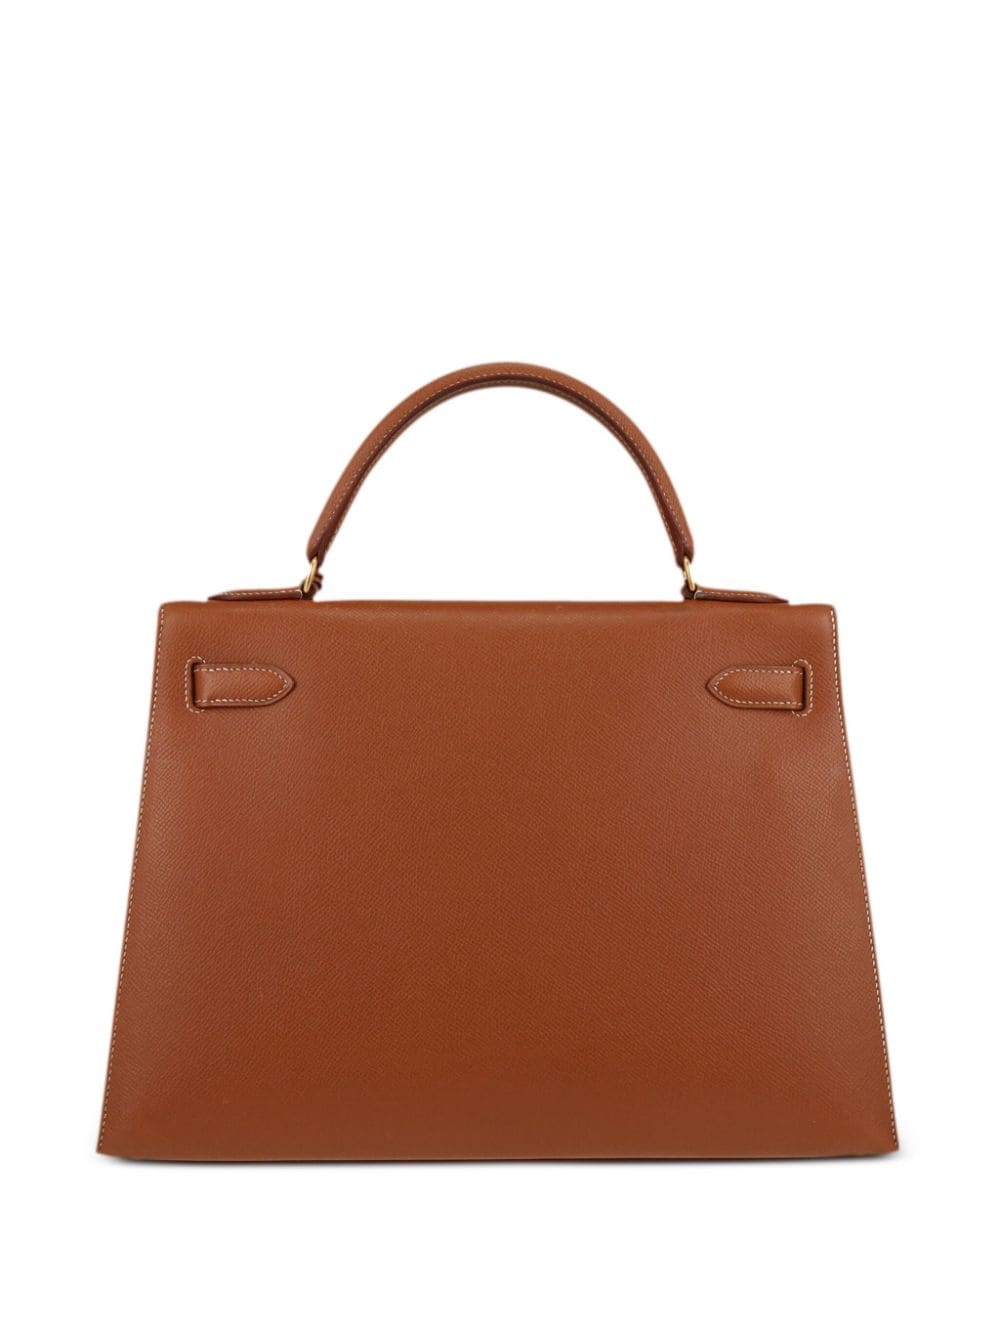 Image 2 of Hermès Pre-Owned Kelly 32 handbag